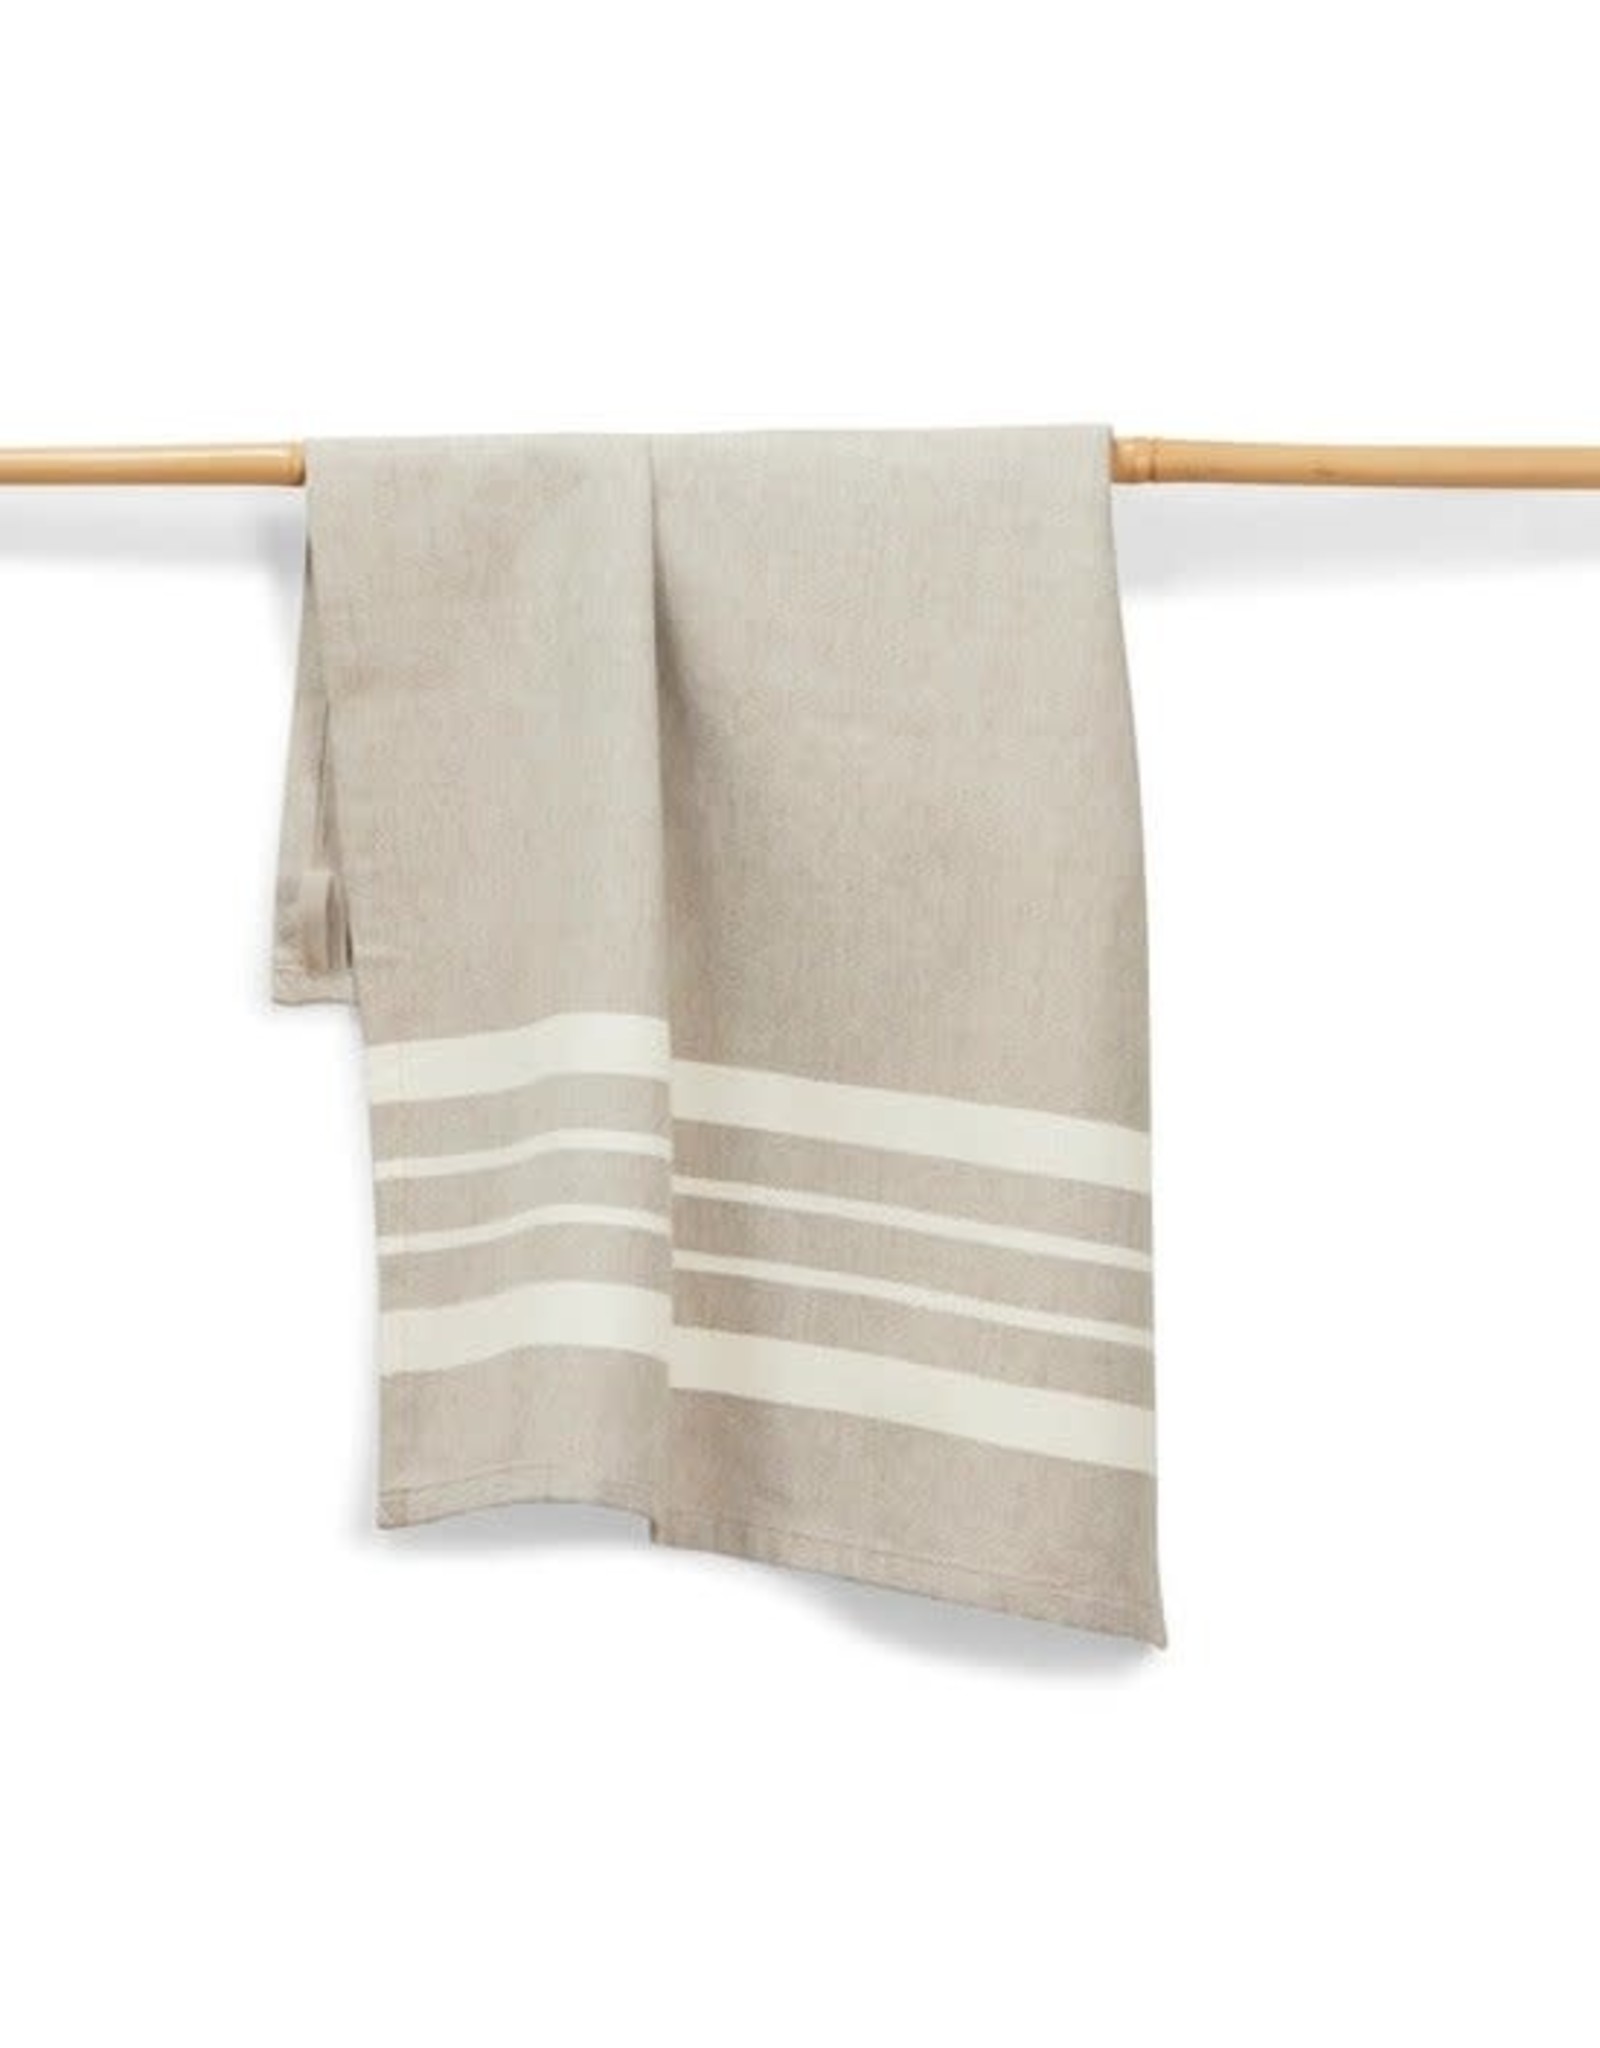 https://cdn.shoplightspeed.com/shops/617743/files/44169088/1600x2048x2/trade-roots-27-x-19-cotton-handwoven-kitchen-towel.jpg